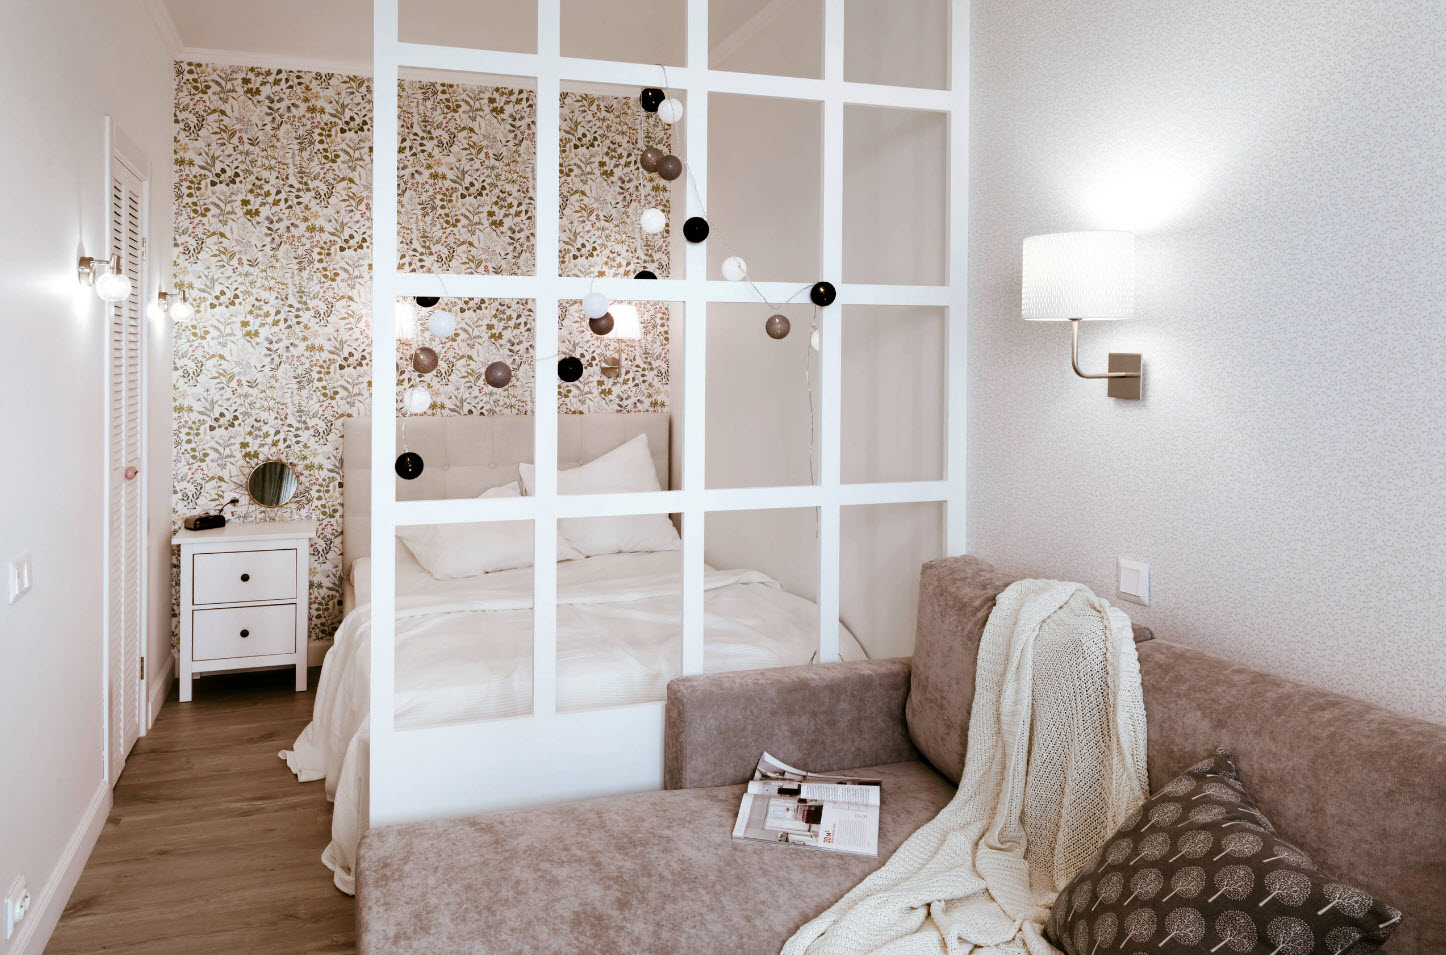 Перегородки для зонирования пространства в комнате – раздвижные, стеклянные, декоративные и деревянные, а также фото